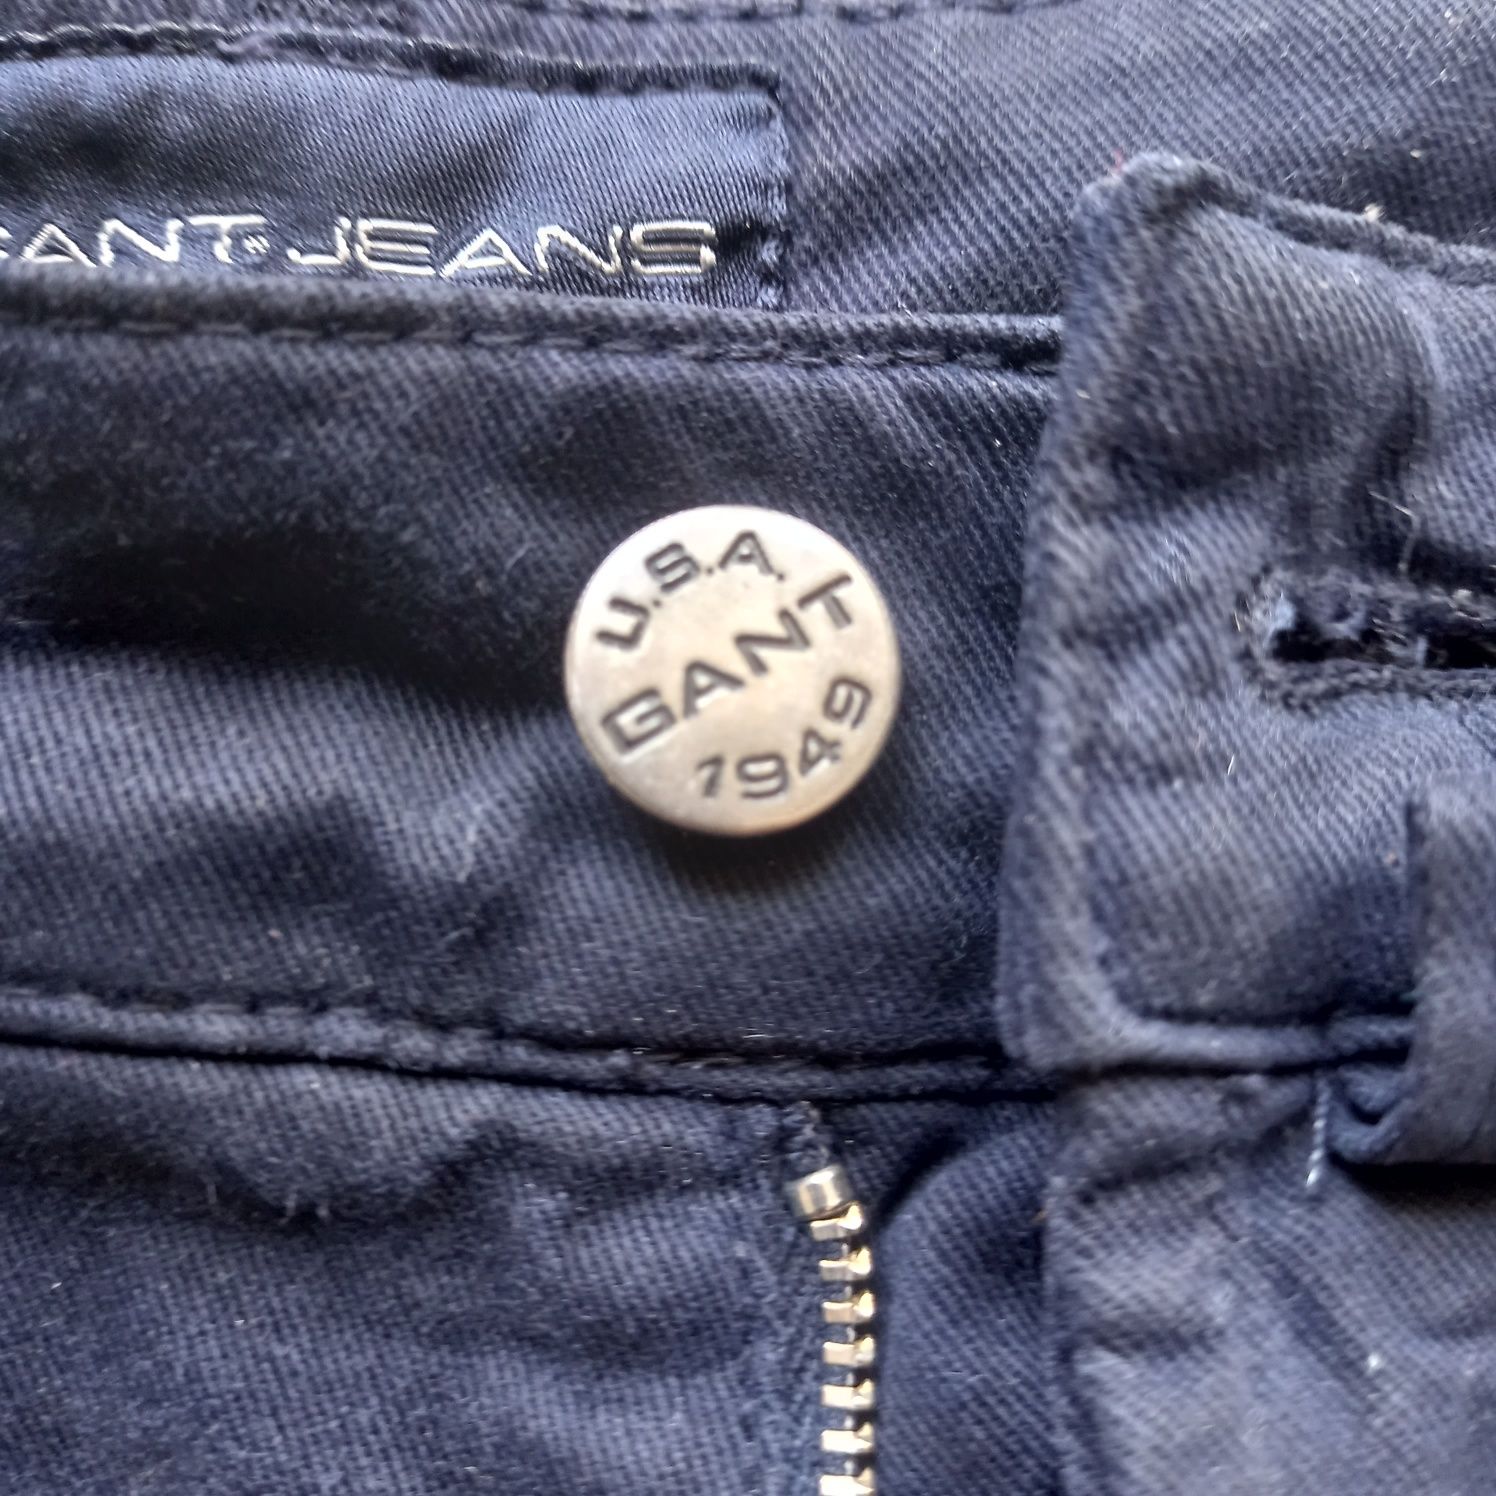 Spodnie grant jeans xxl